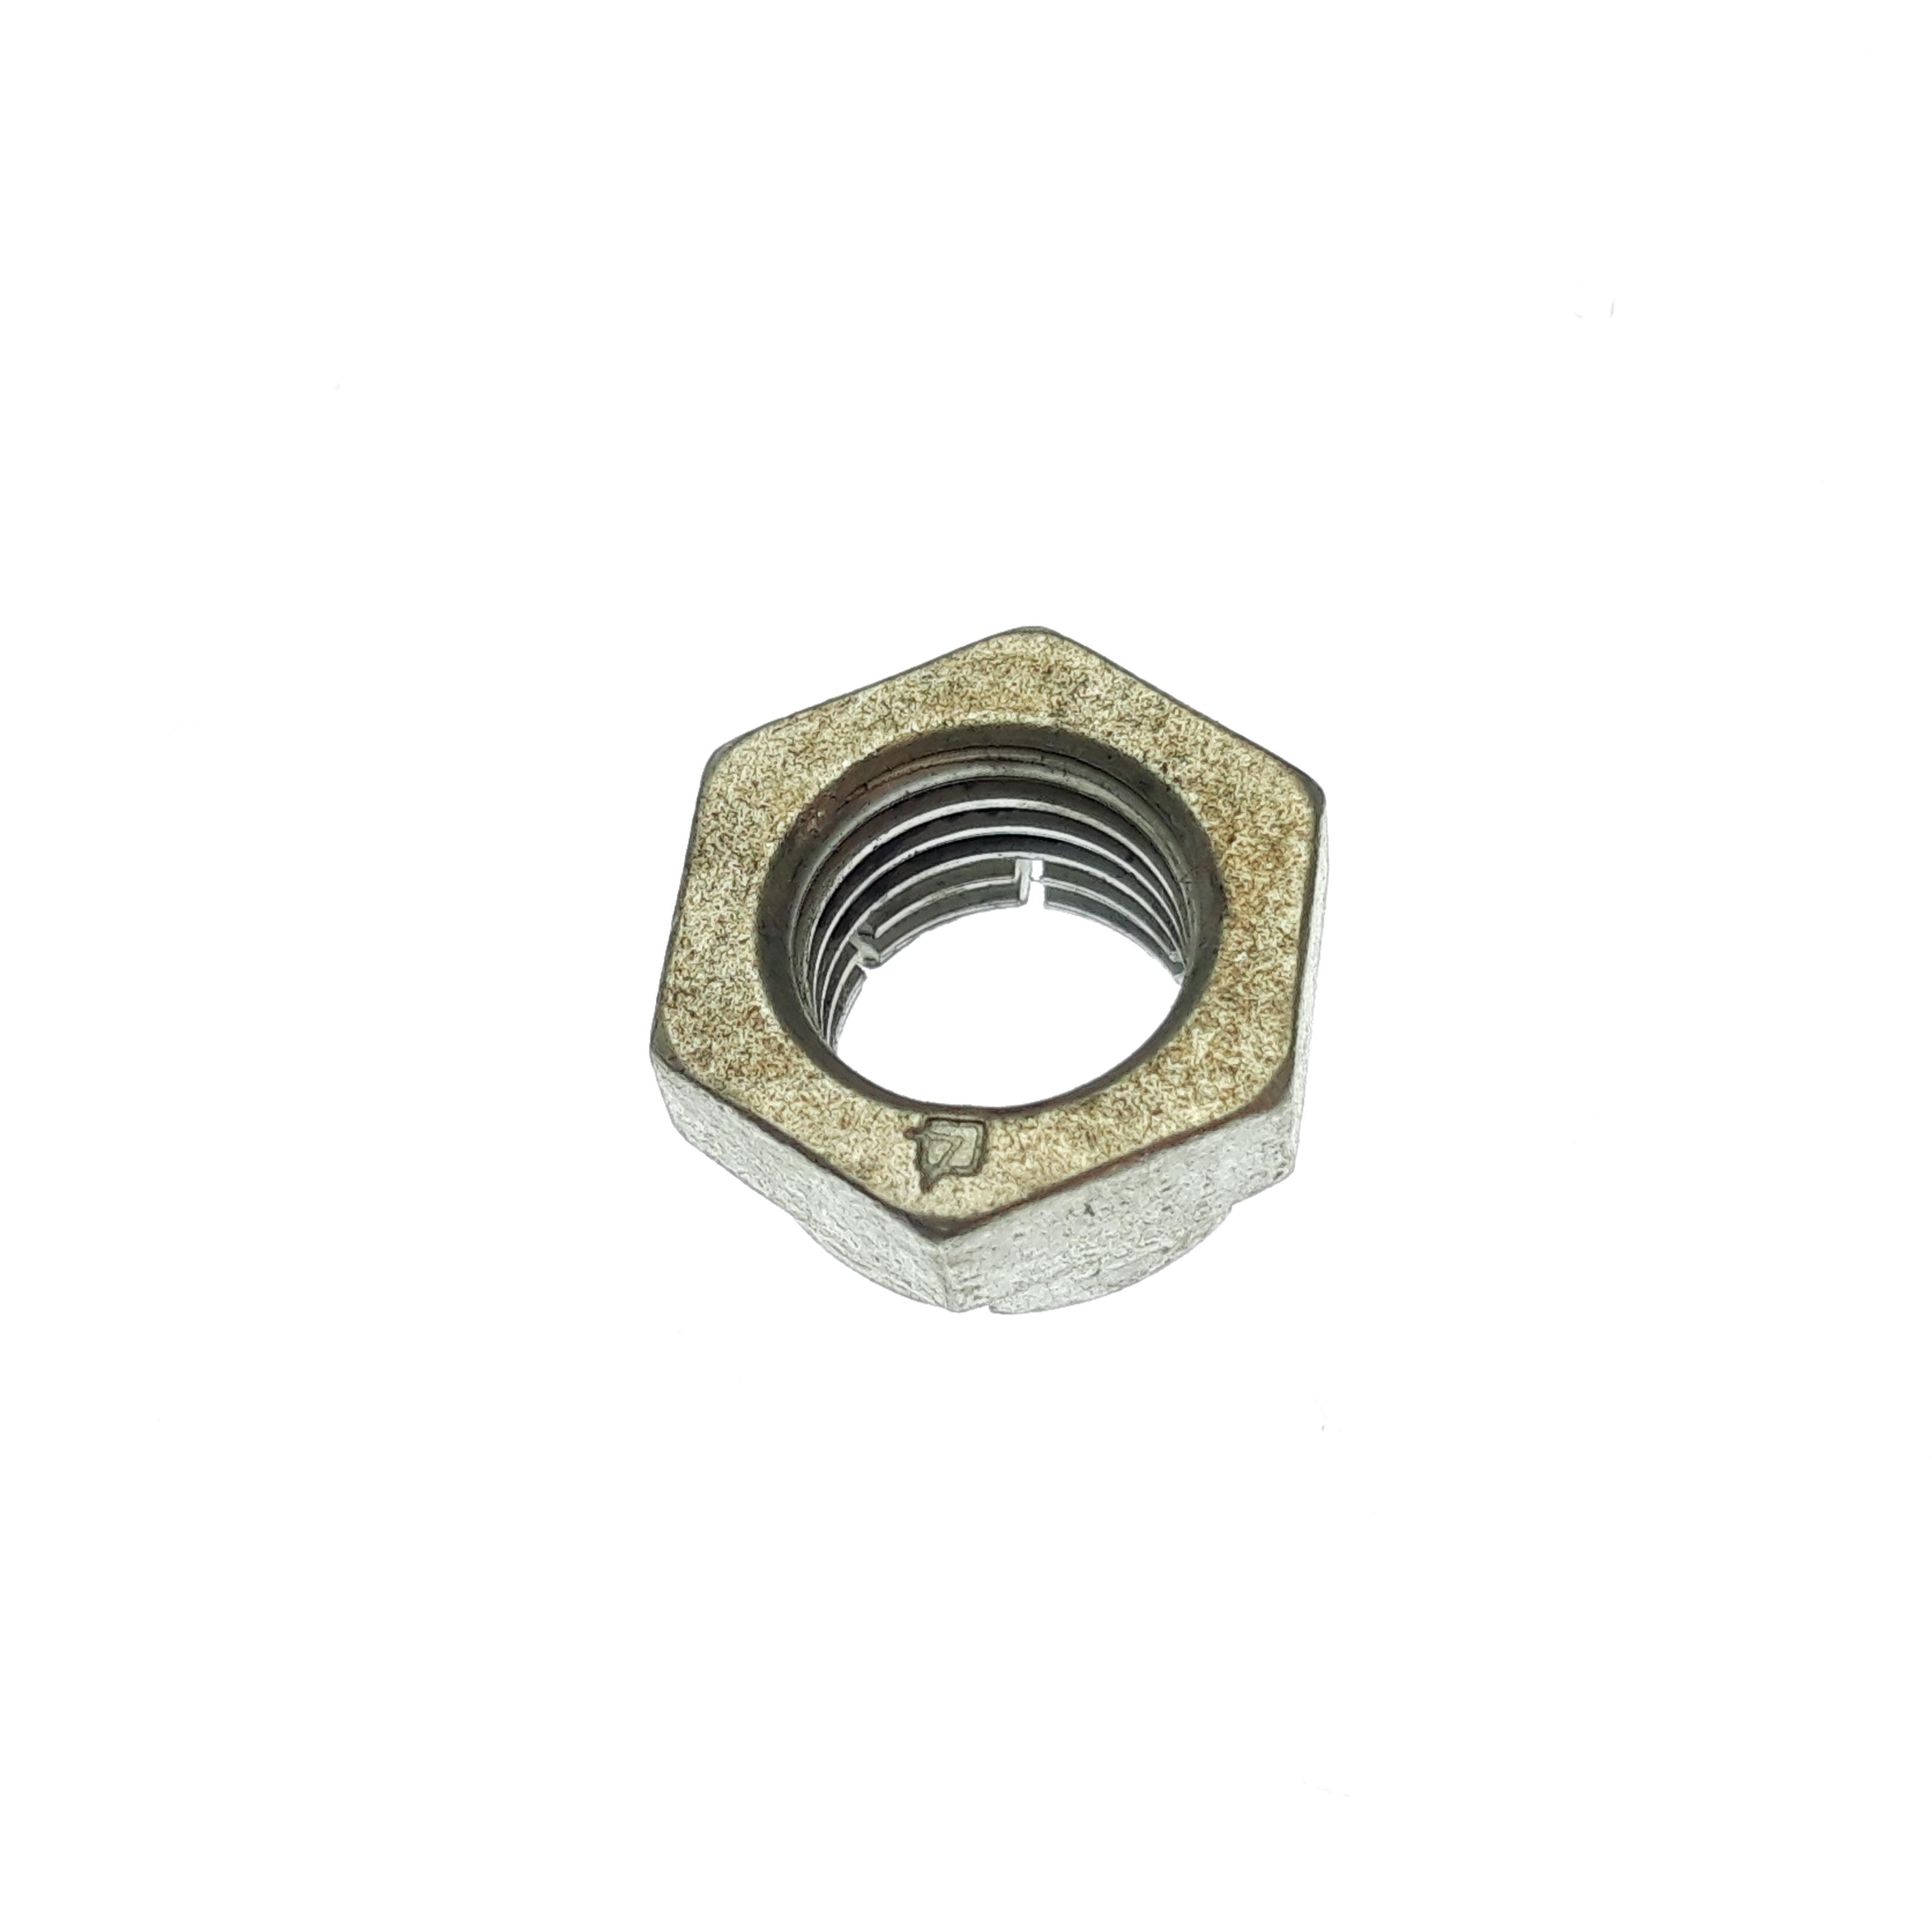 Obrázek produktu Fastener, Standard: Nut, Lock (3/8-24 X 0.310 TLG) Plated 018-00-003-A